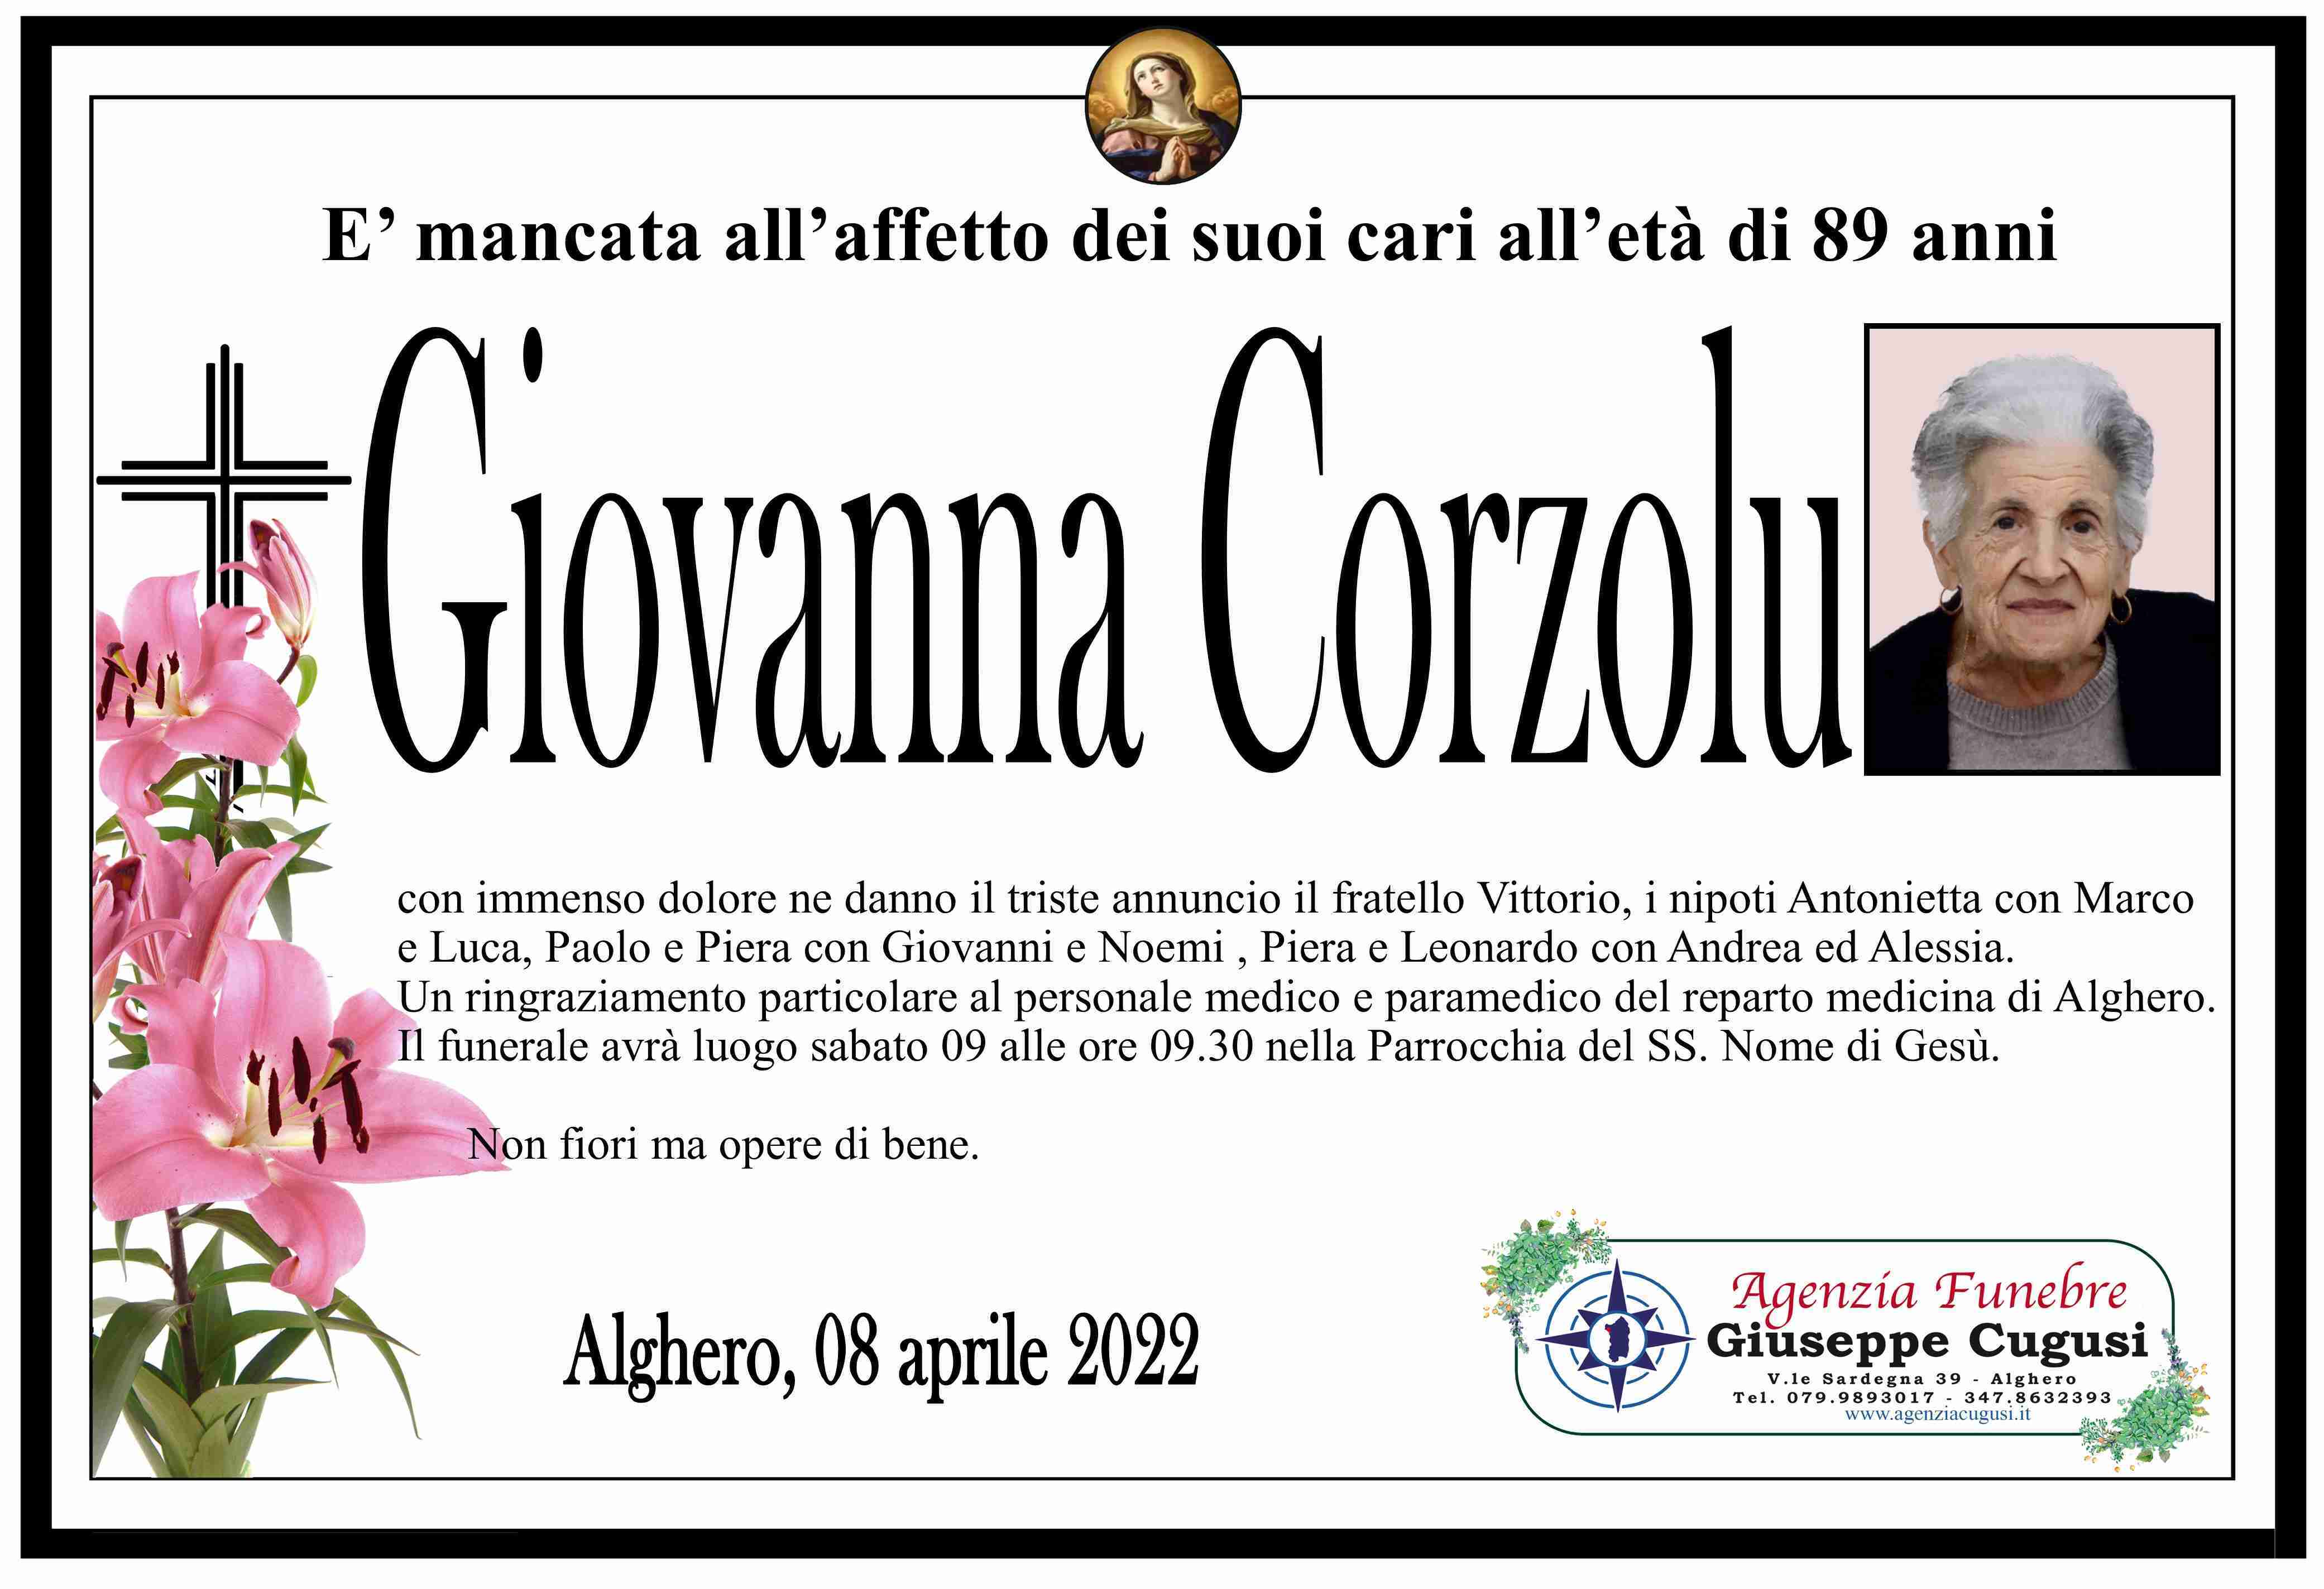 Giovanna Corzolu